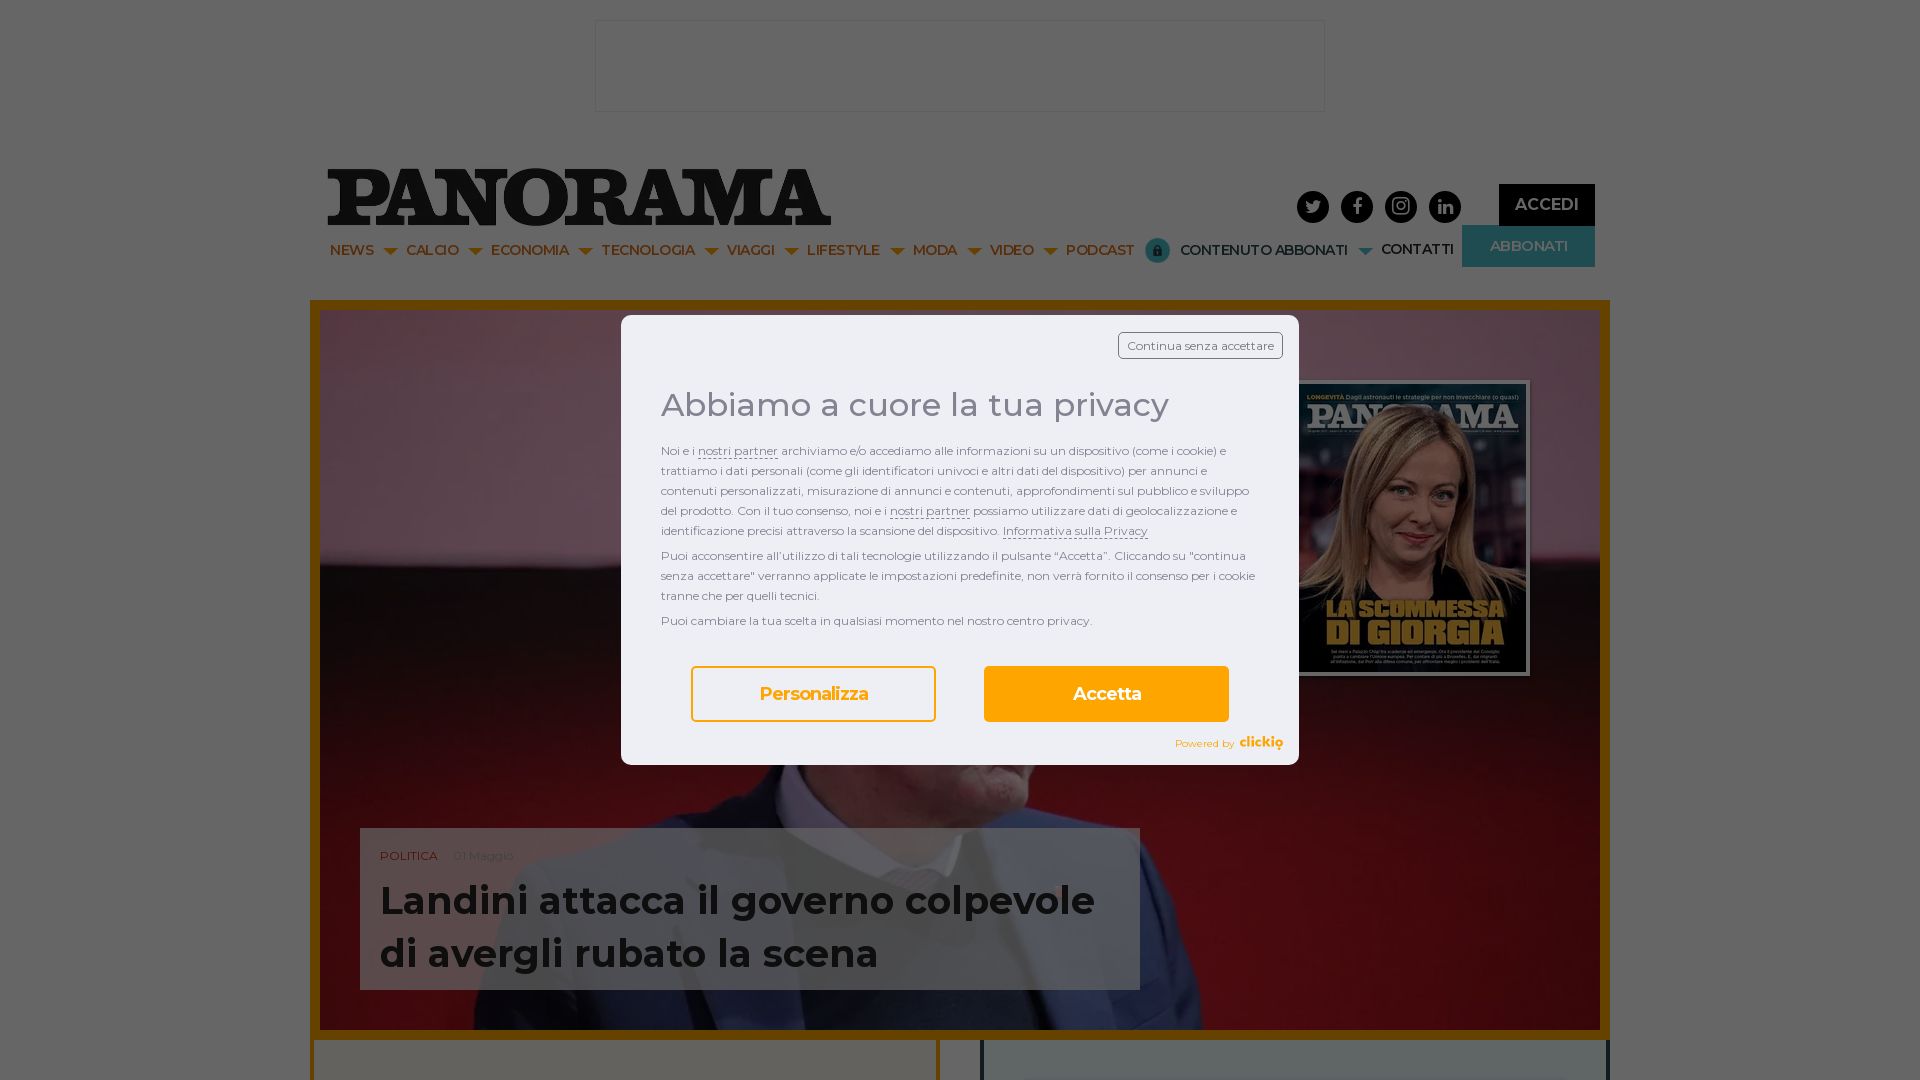 网站状态 panorama.it 是  在线的